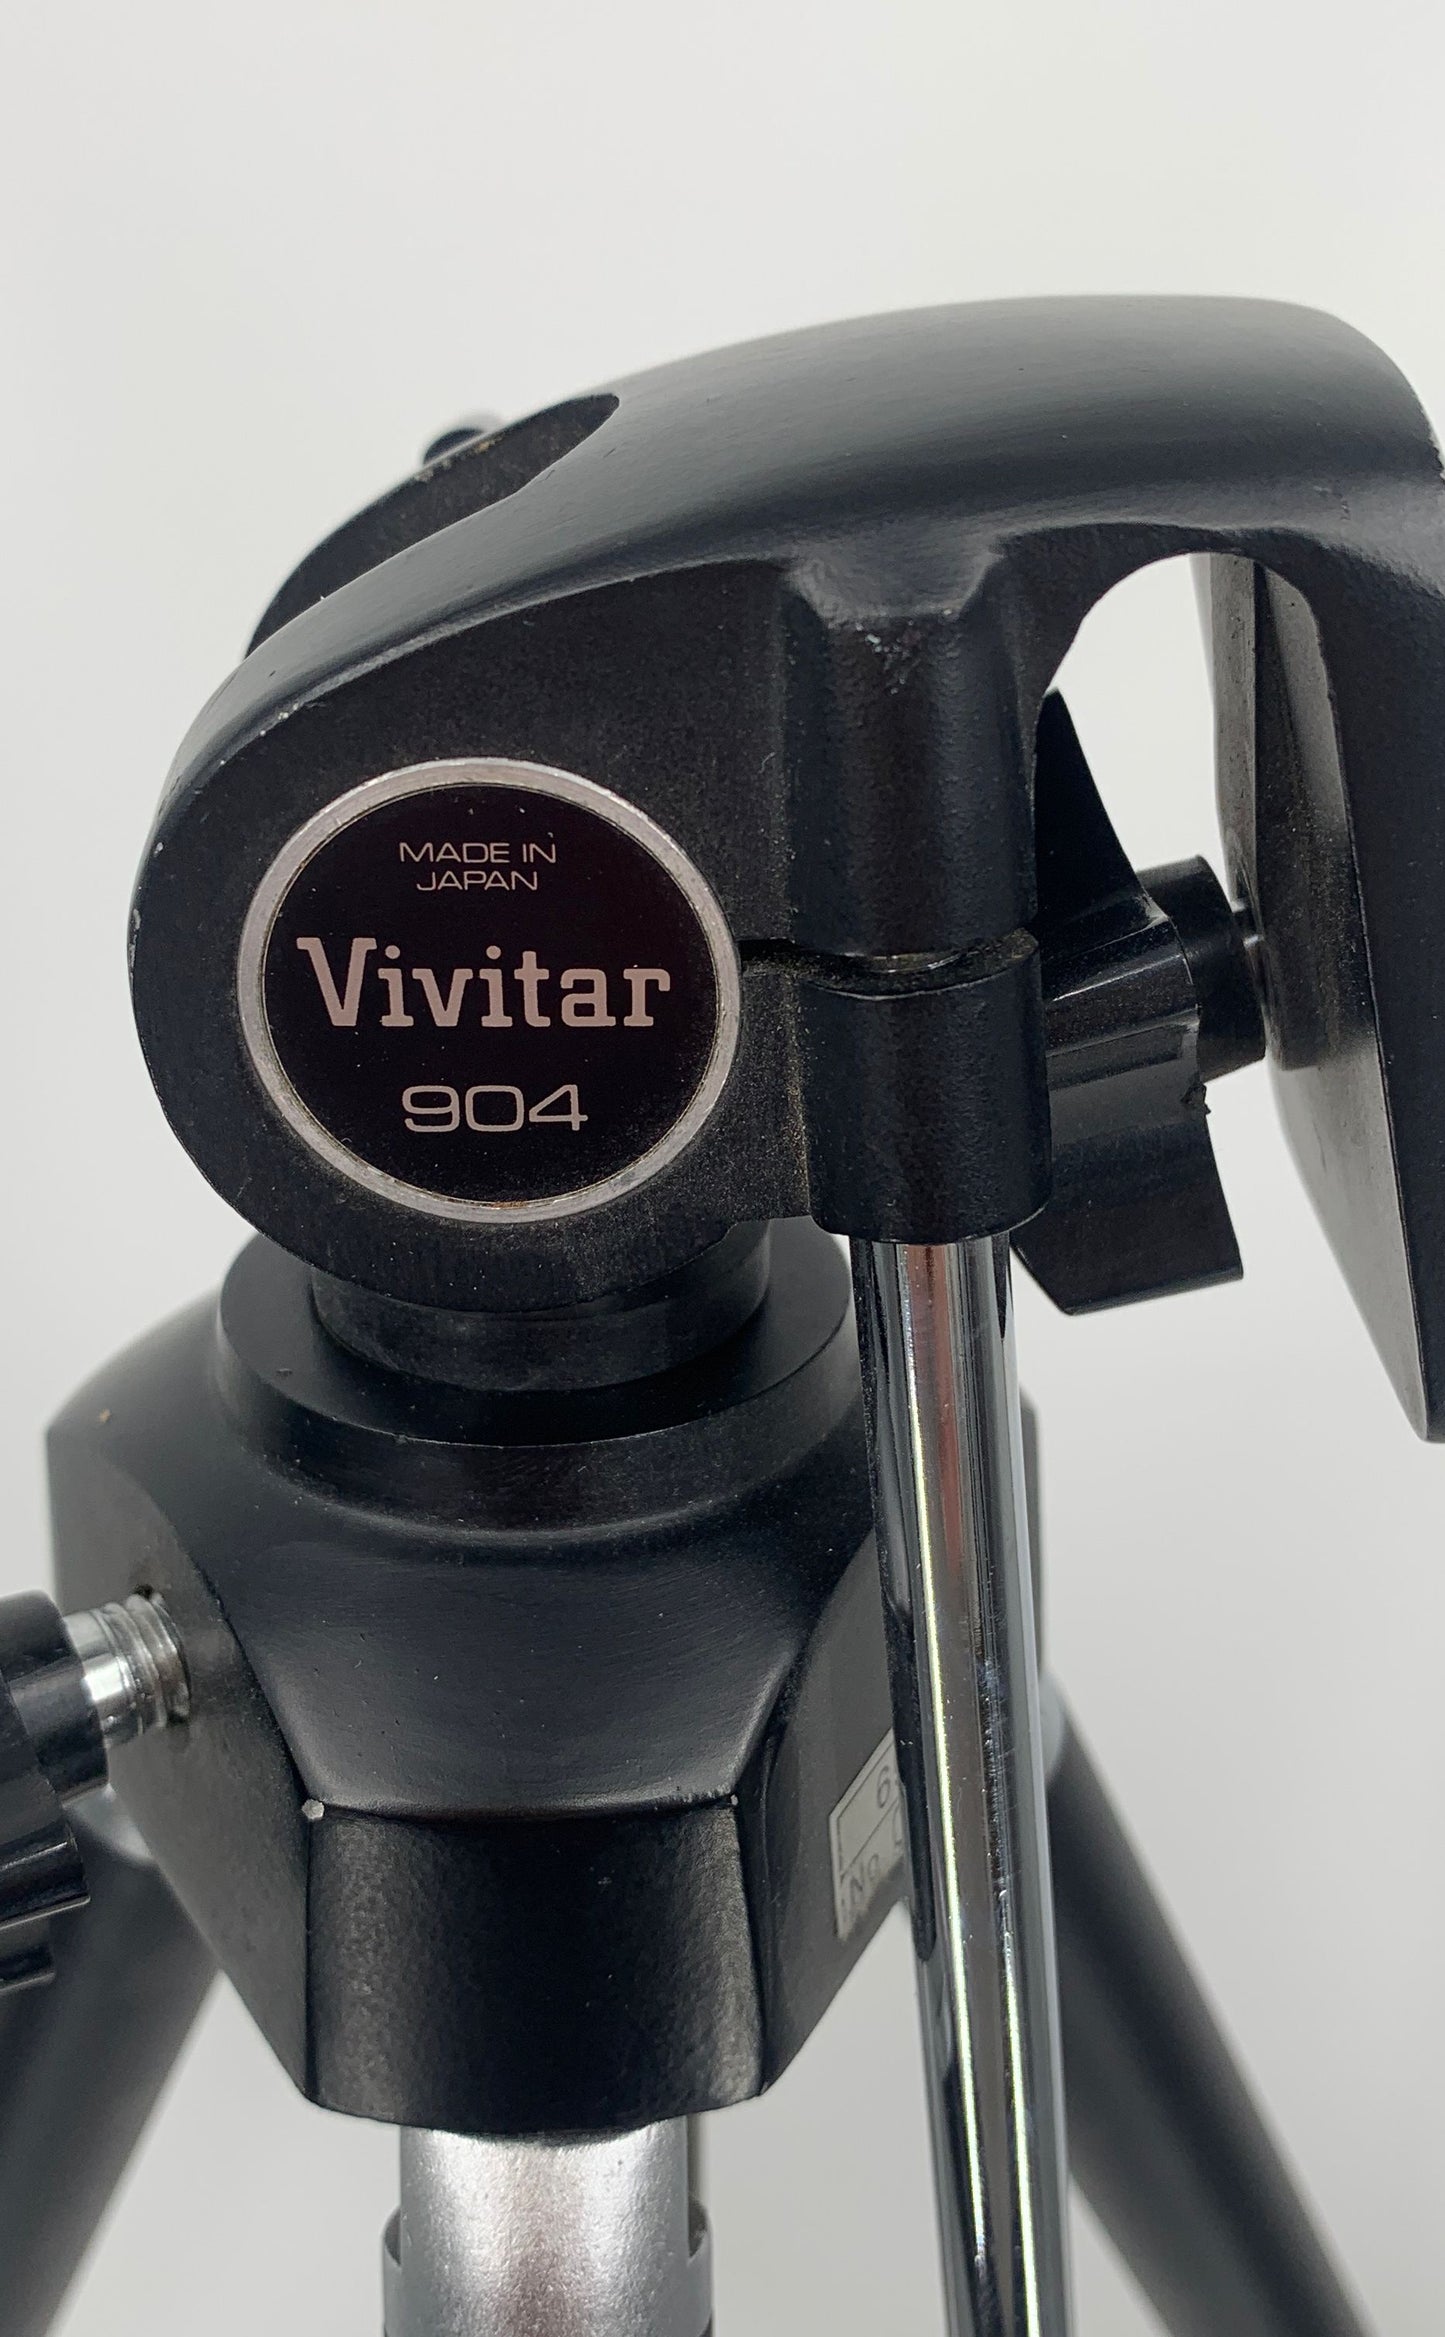 Vivitar Black 904 Tripod Adjustable 58" Tall Collapsable To 22"